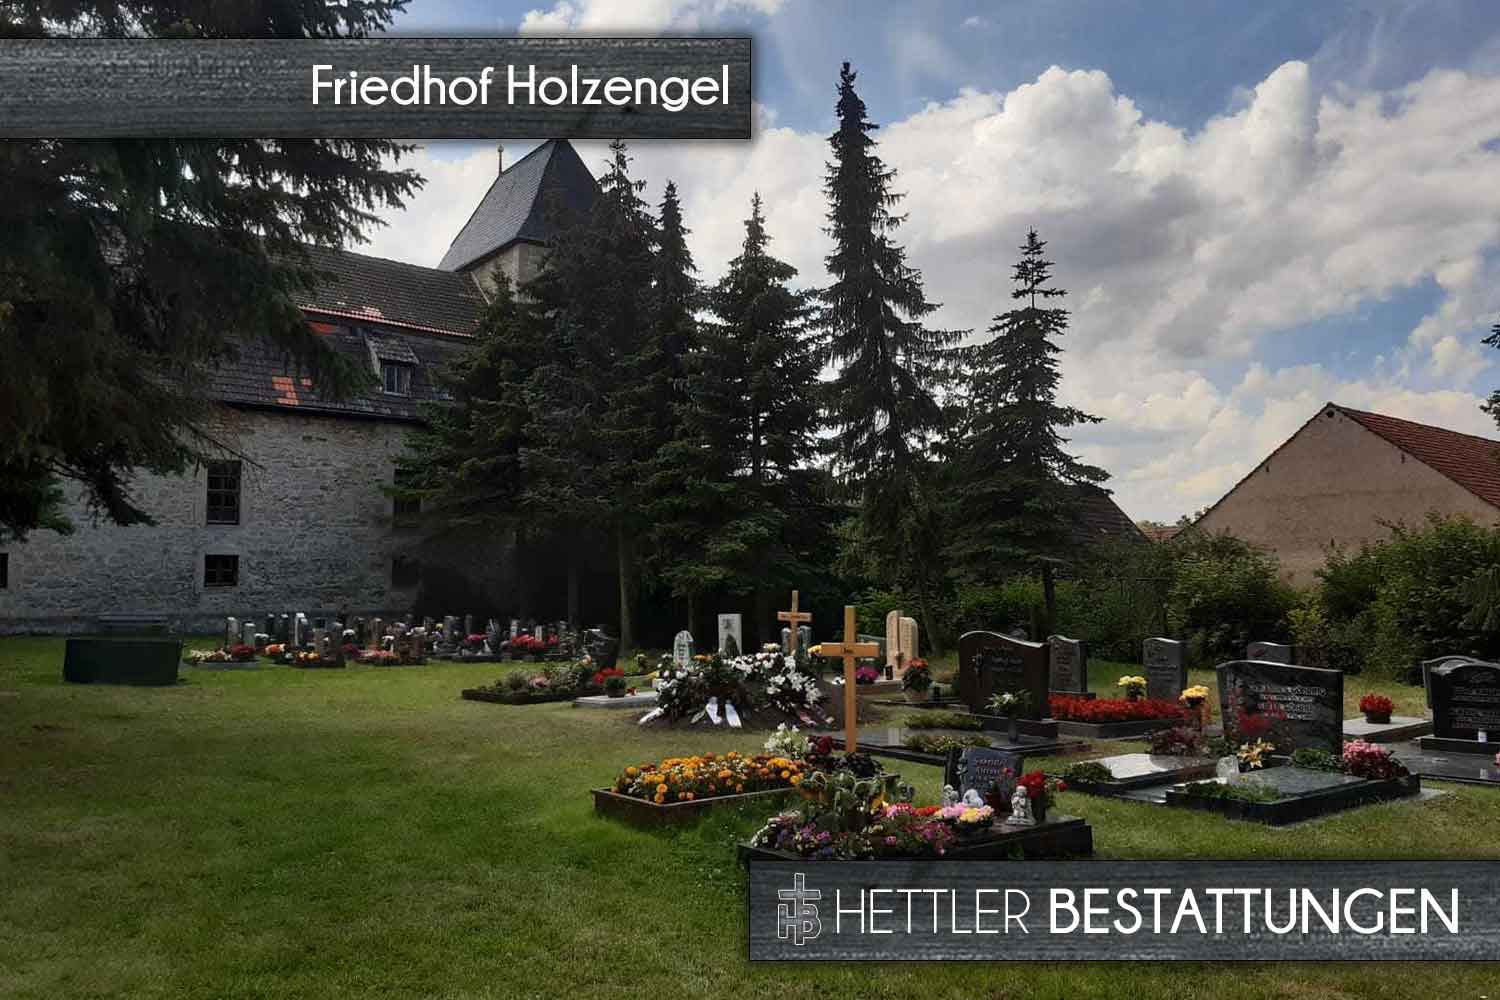 Friedhof in Holzengel. Ihr Ort des Abschieds mit Hettler Bestattungen.